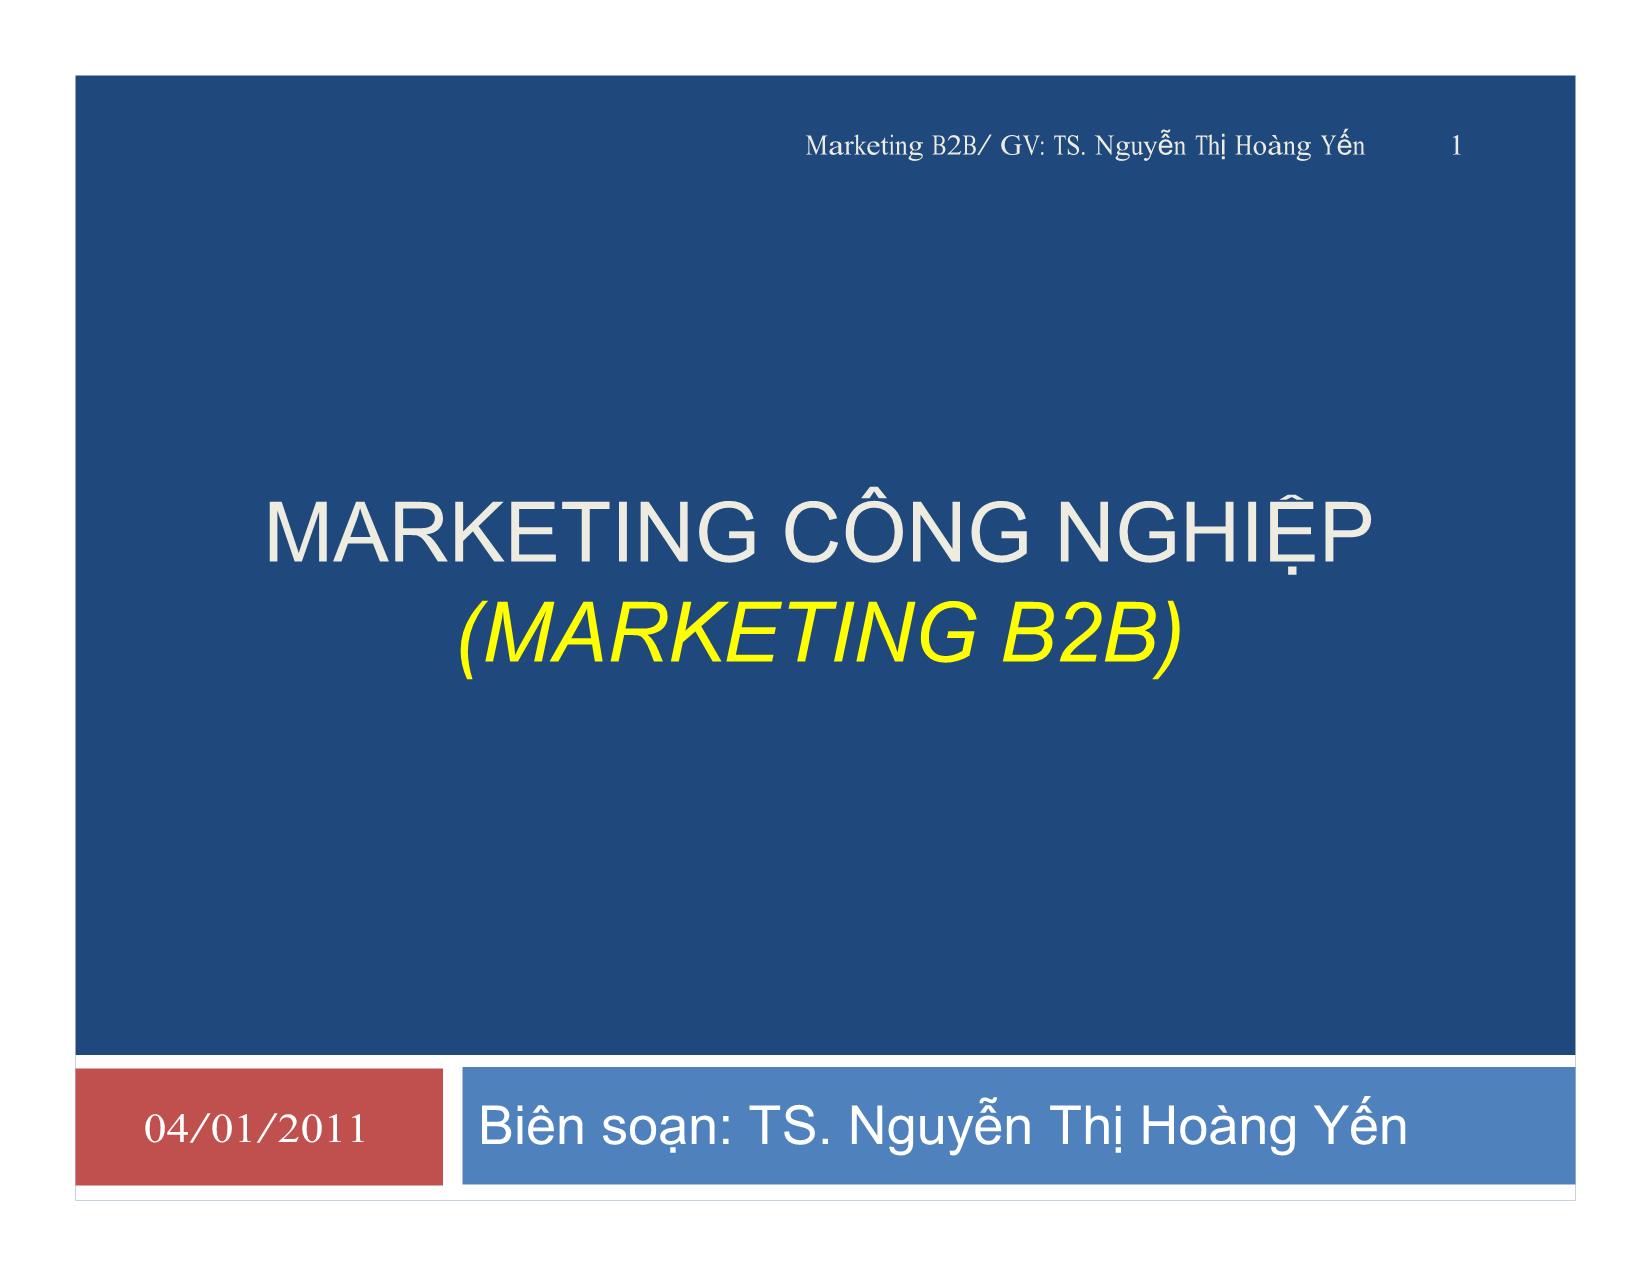 Giáo trình Marketing công nghiệp (marketing b2b) trang 1